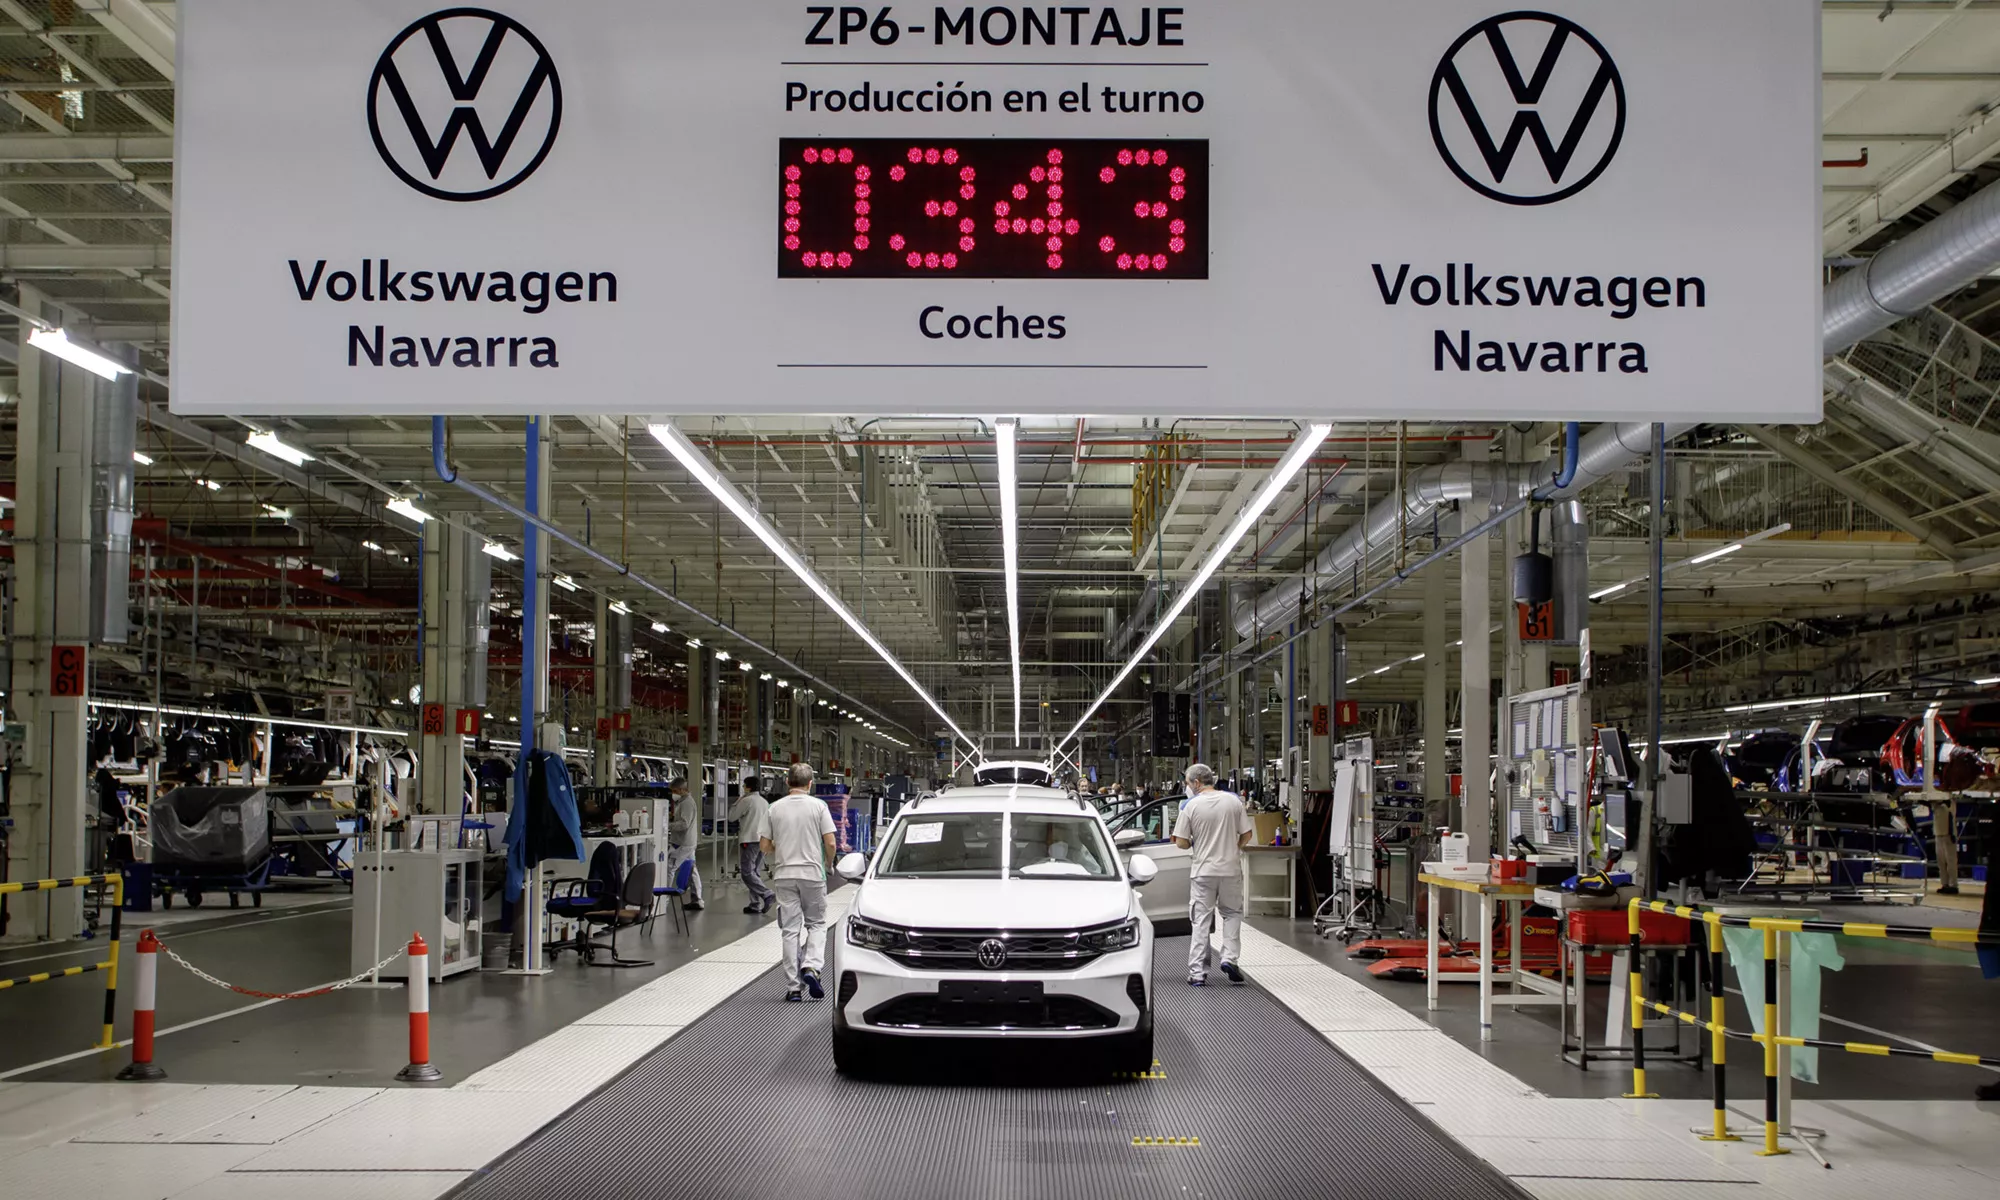 Todos los indicios apuntan a que esta nueva planta de Hyundai Mobis podría estar ubicada junto a la fábrica de Volkswagen de Pamplona.